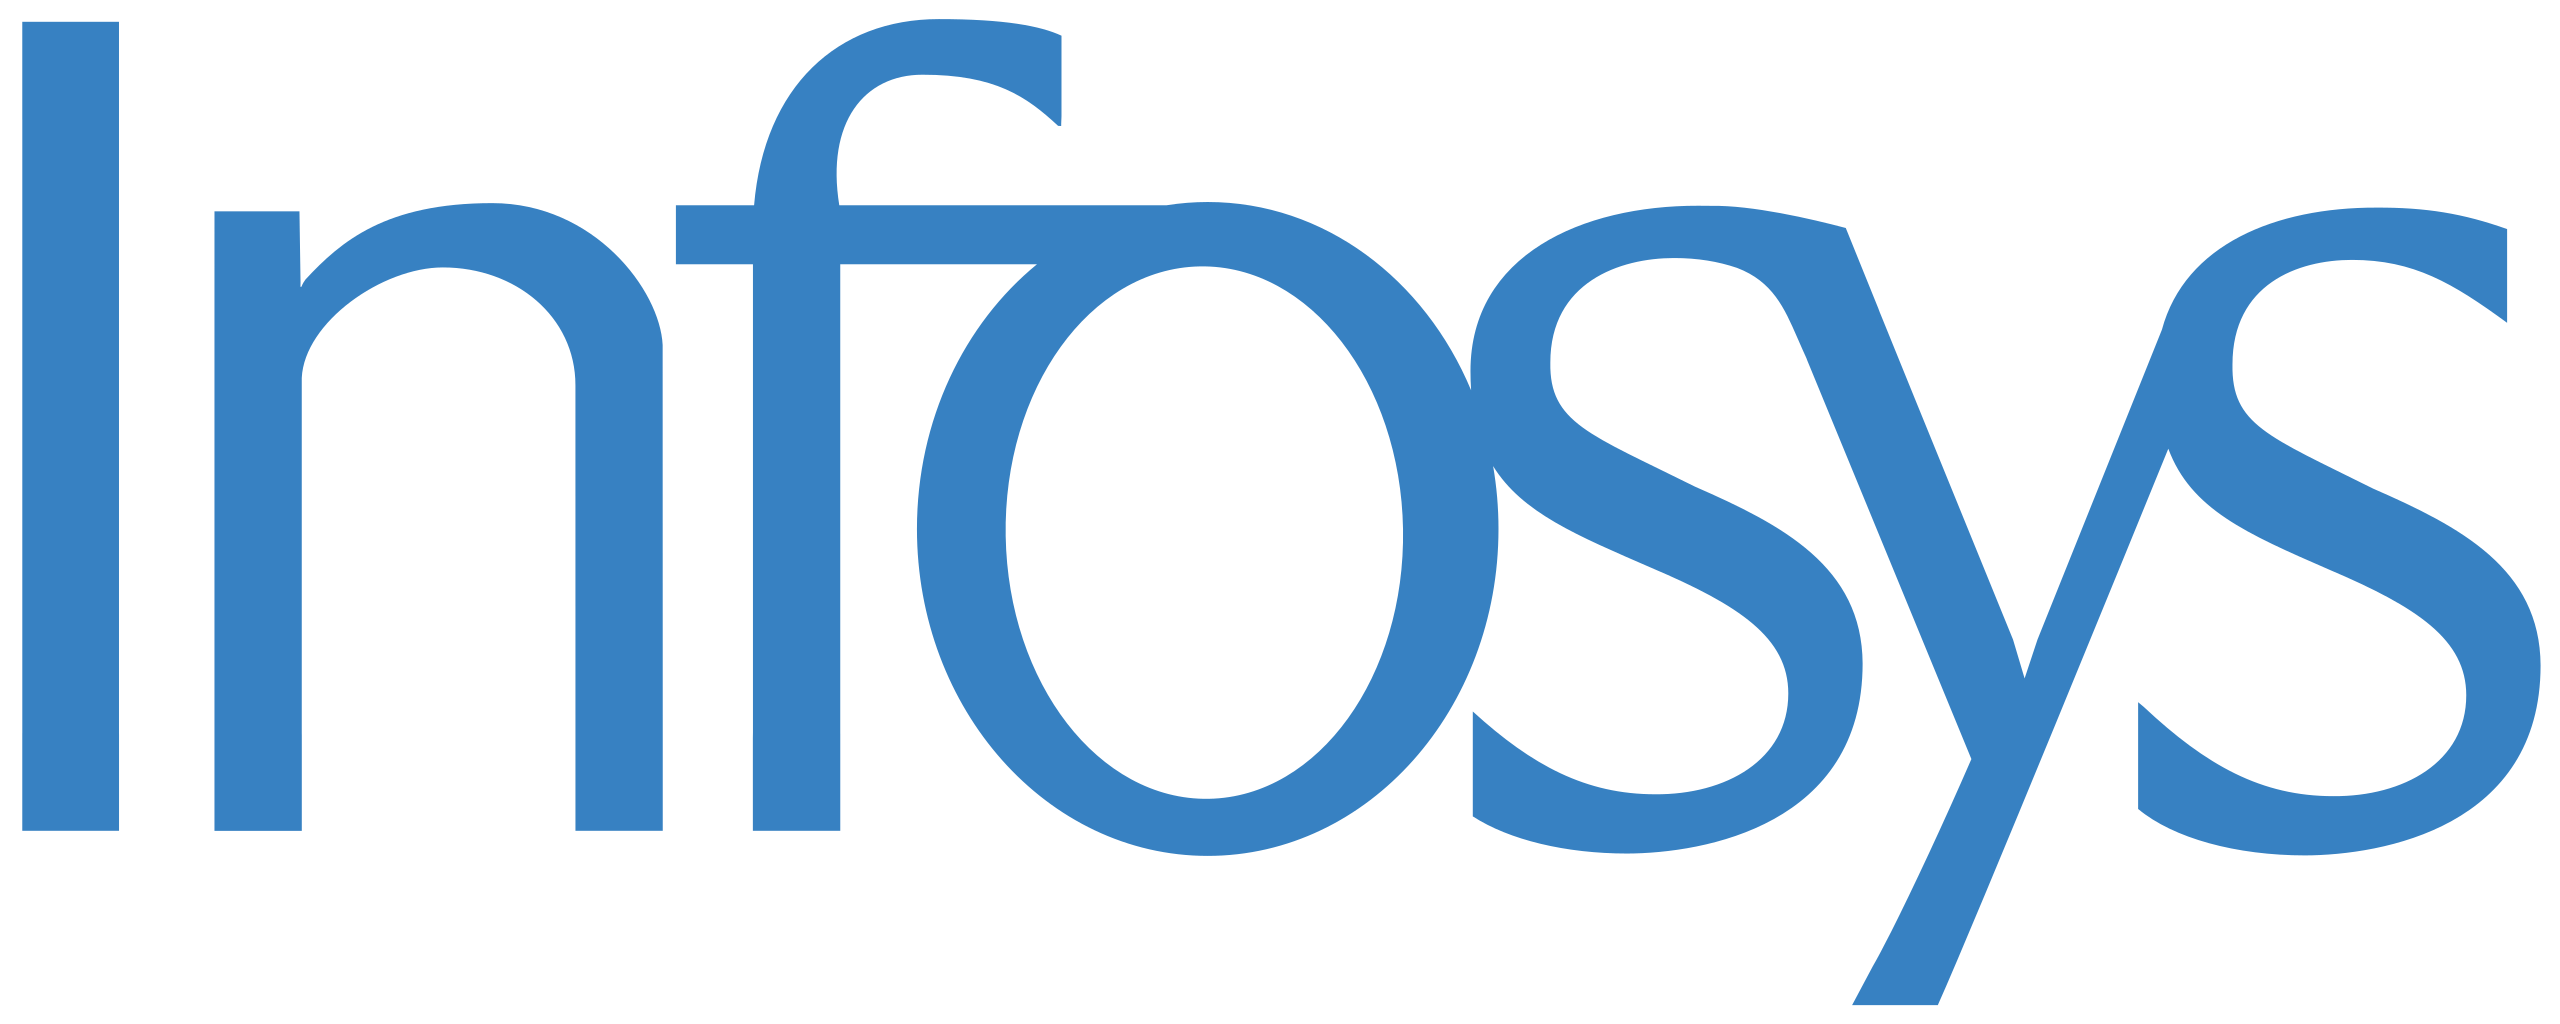 Infosys_logo